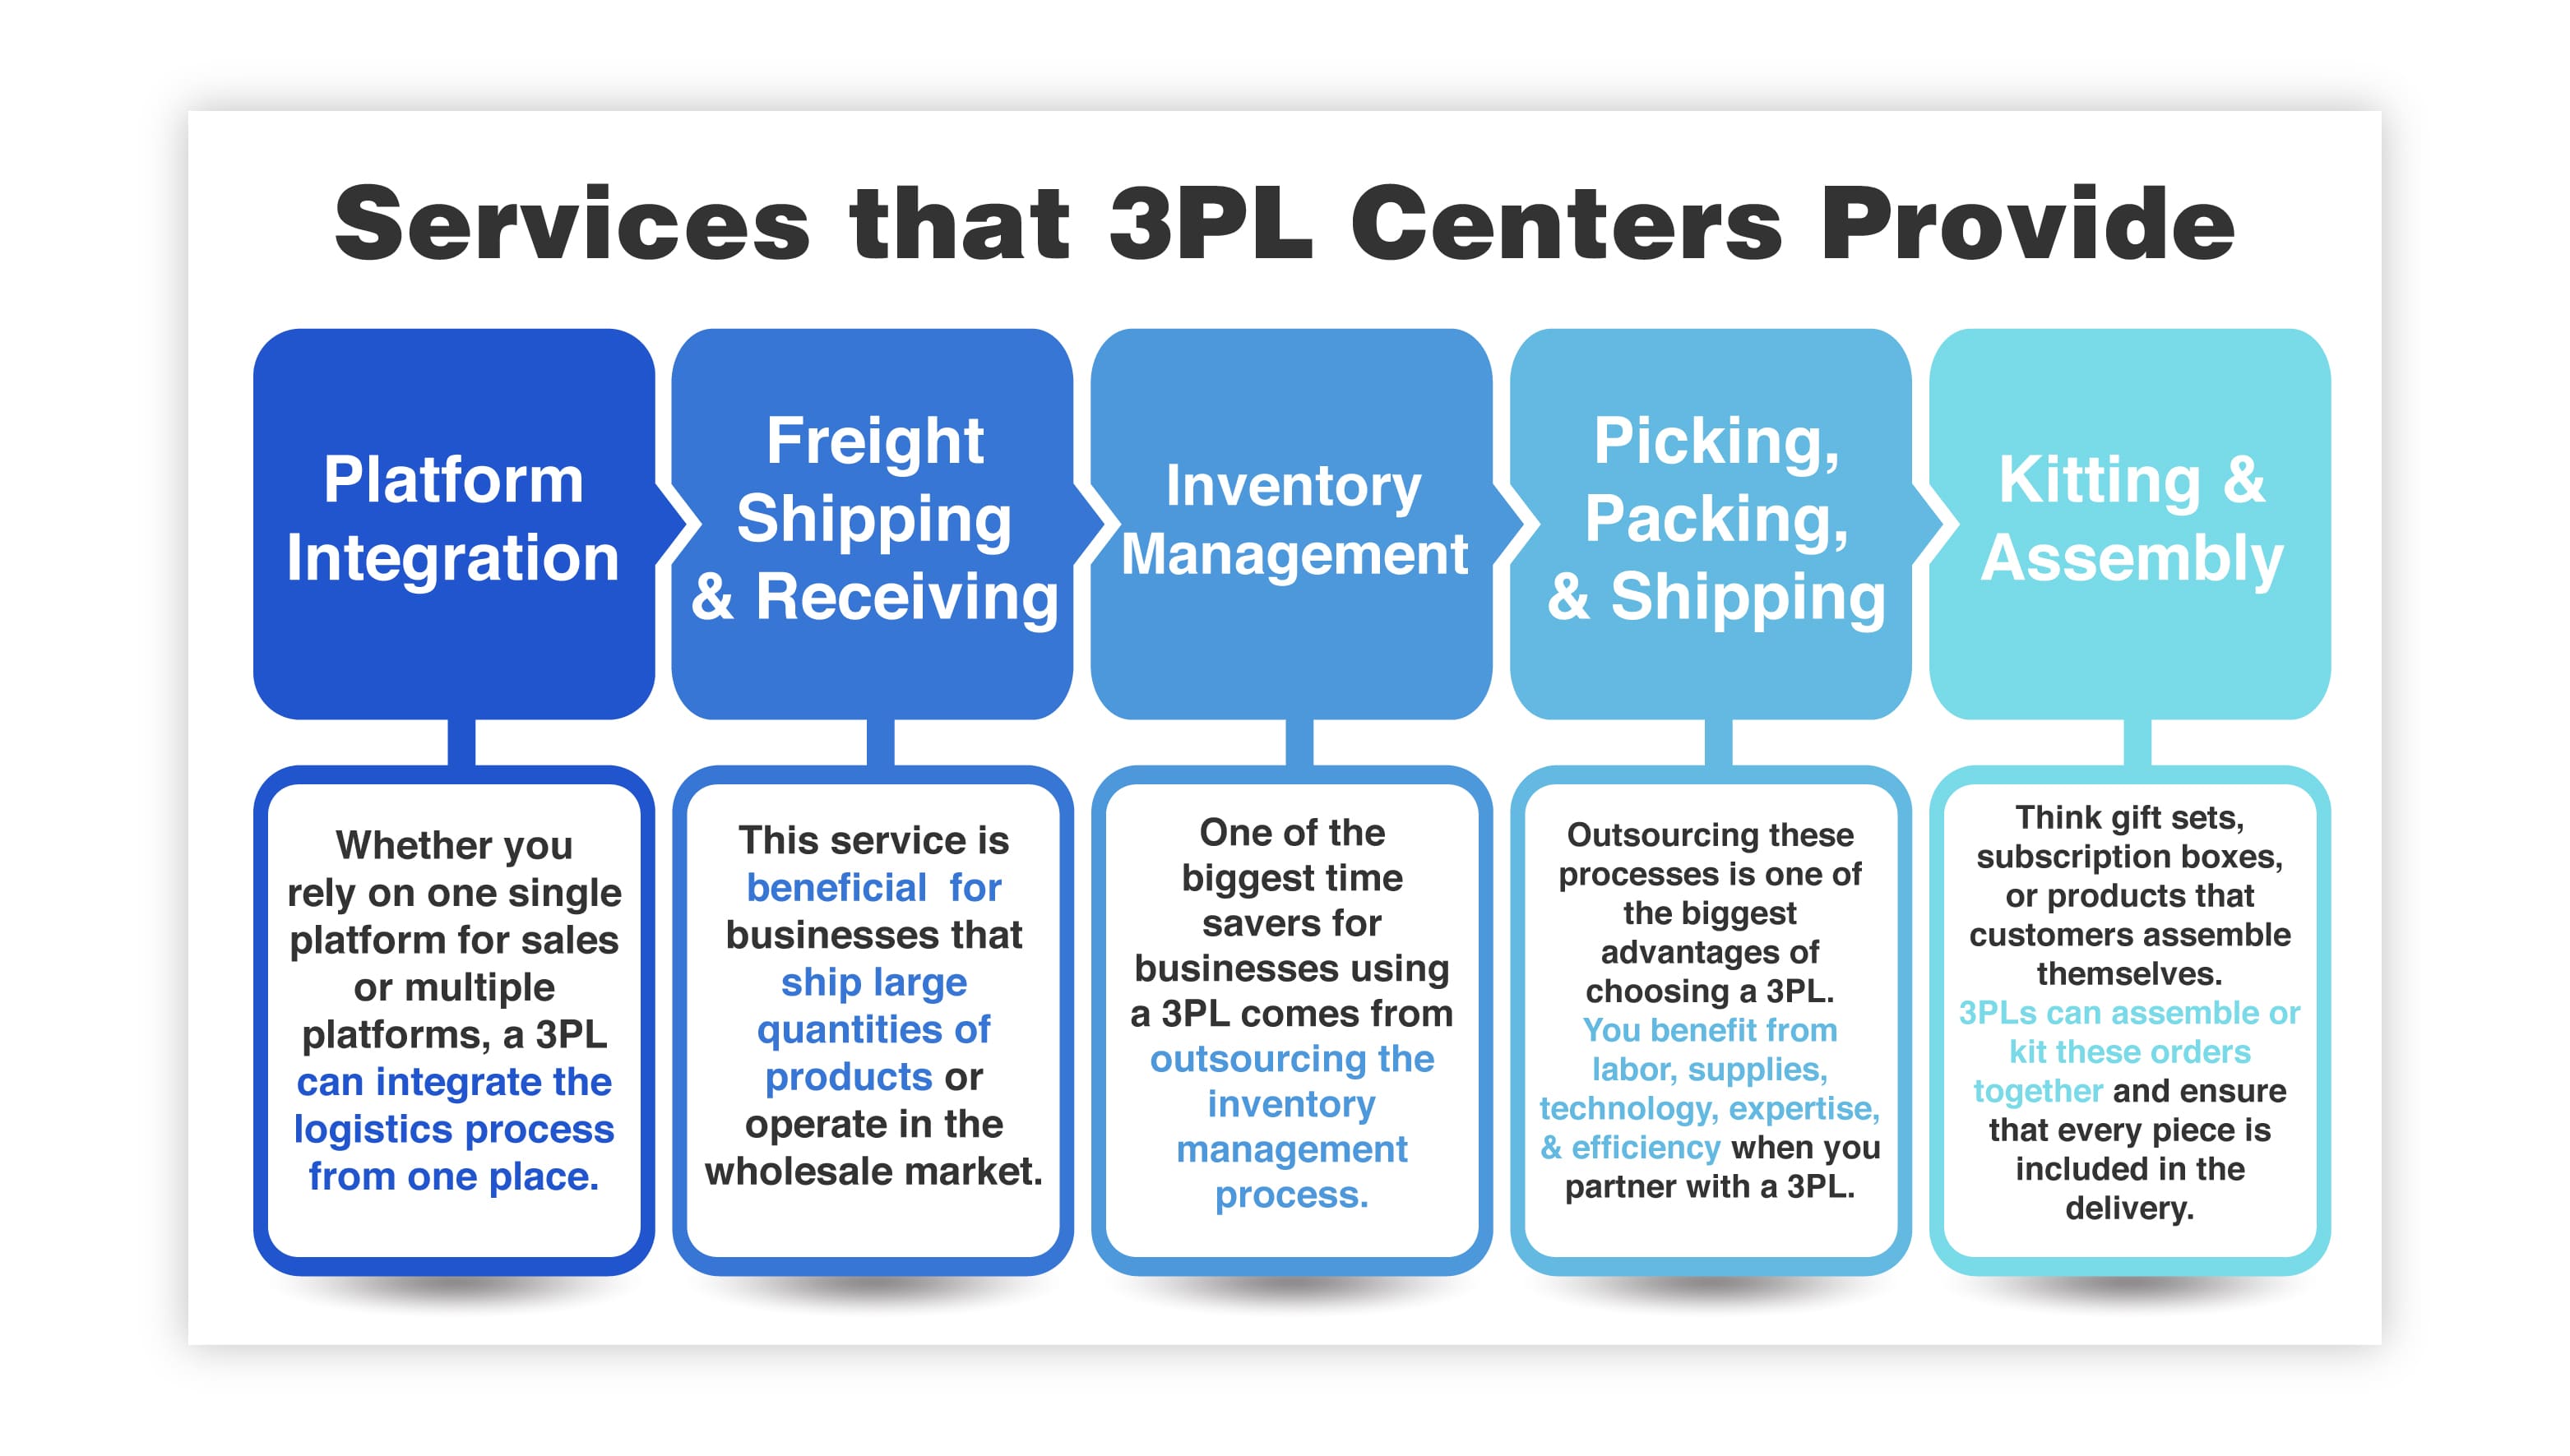 Services that 3PL Centers Provide